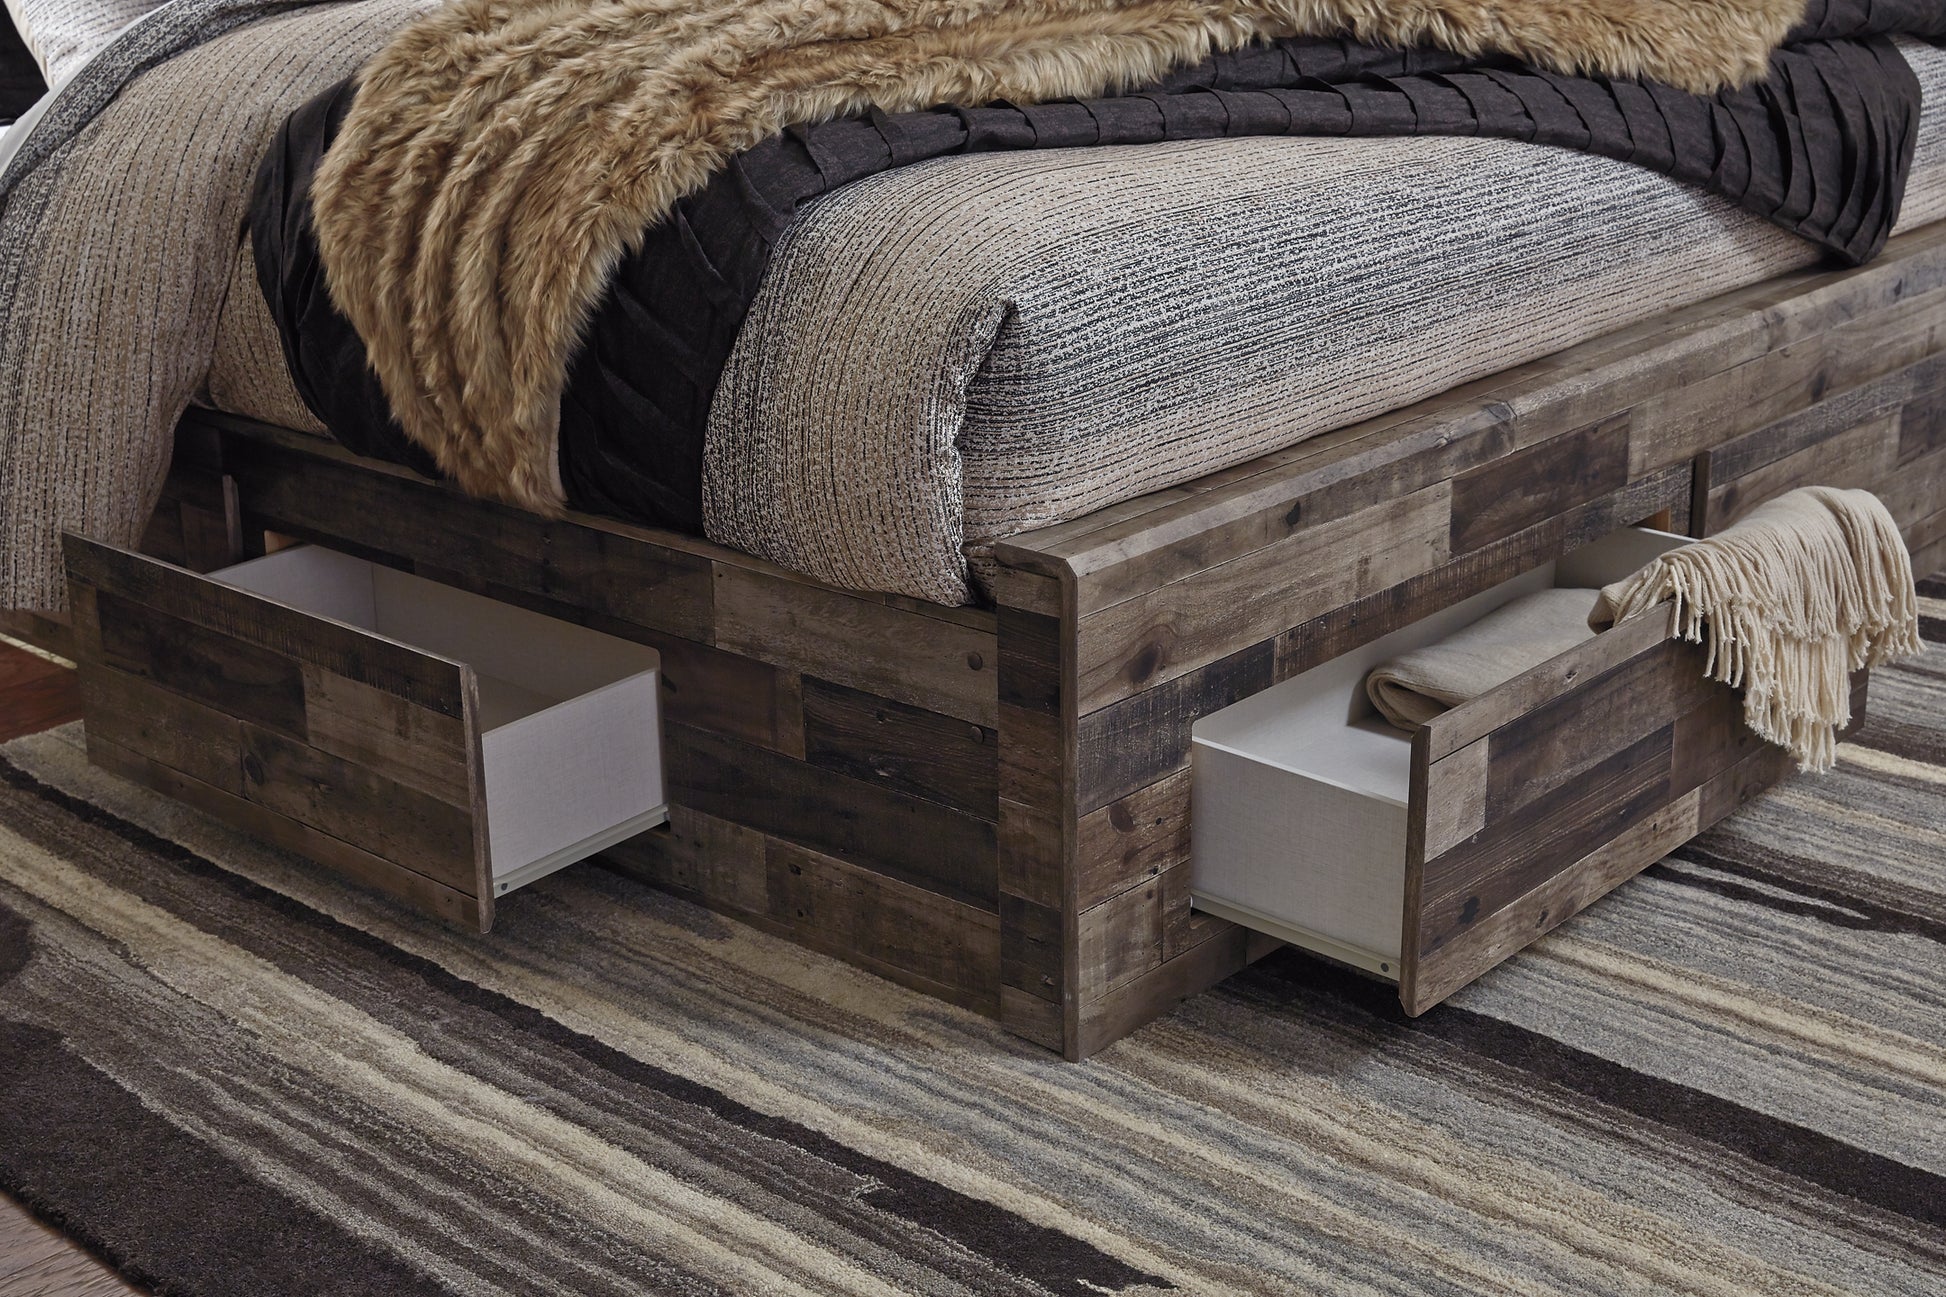 Derekson Queen Panel Bed with 4 Storage Drawers Benchcraft®